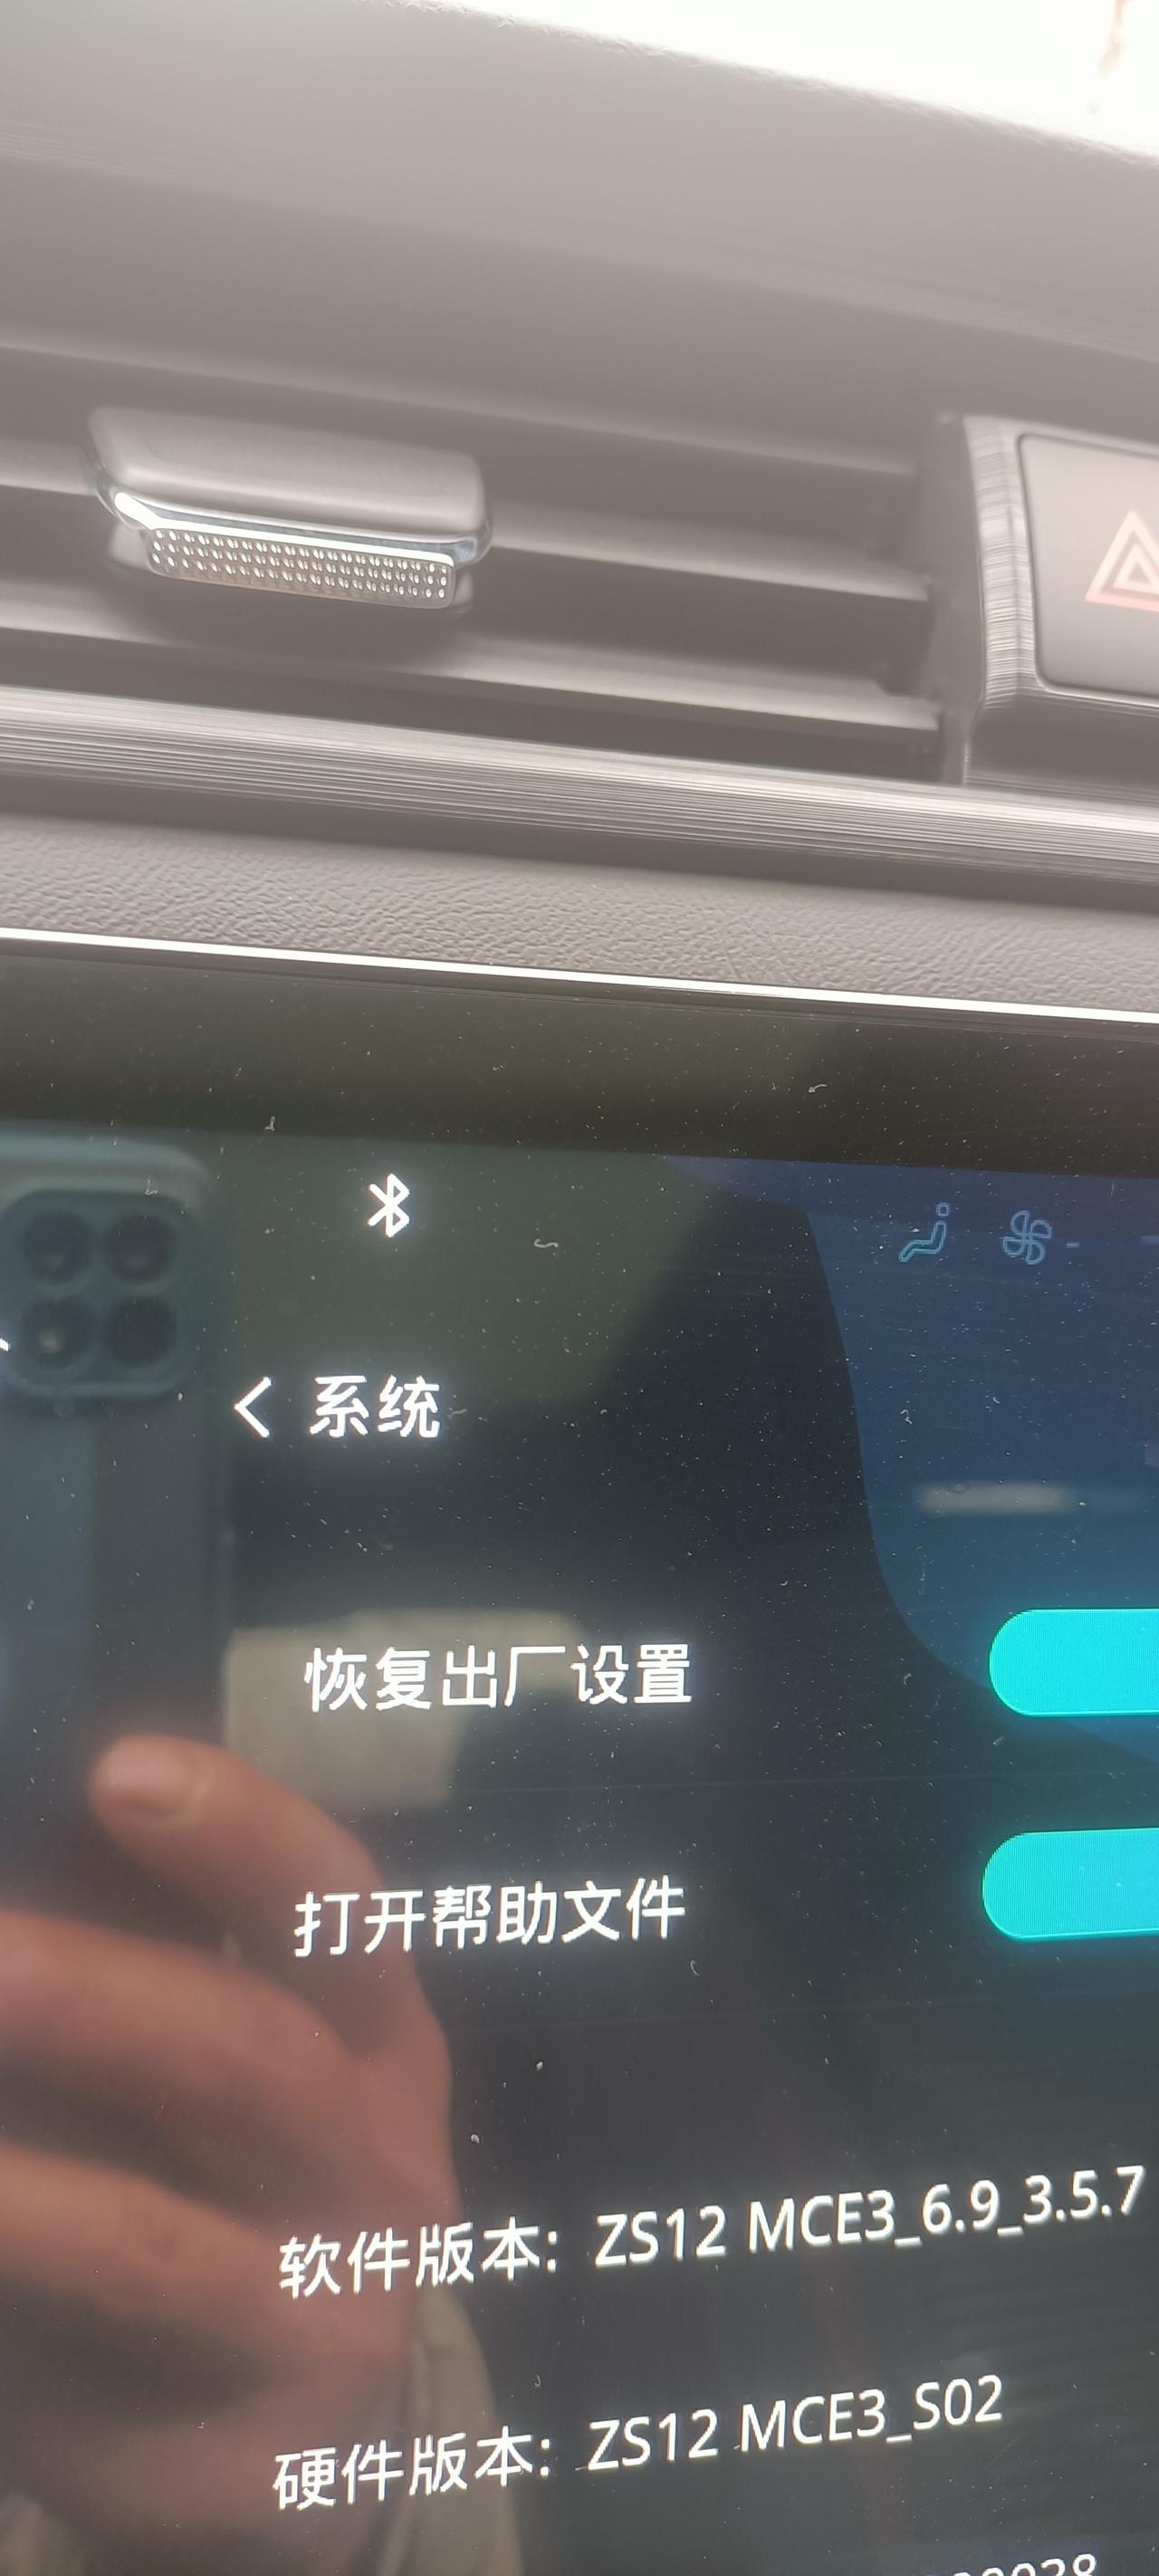 荣威RX3 手动挡的车机系统不能连接wifi，不能自主升级，该怎么办？这个系统车手互联软件不能添加应用不能看视频，不知道